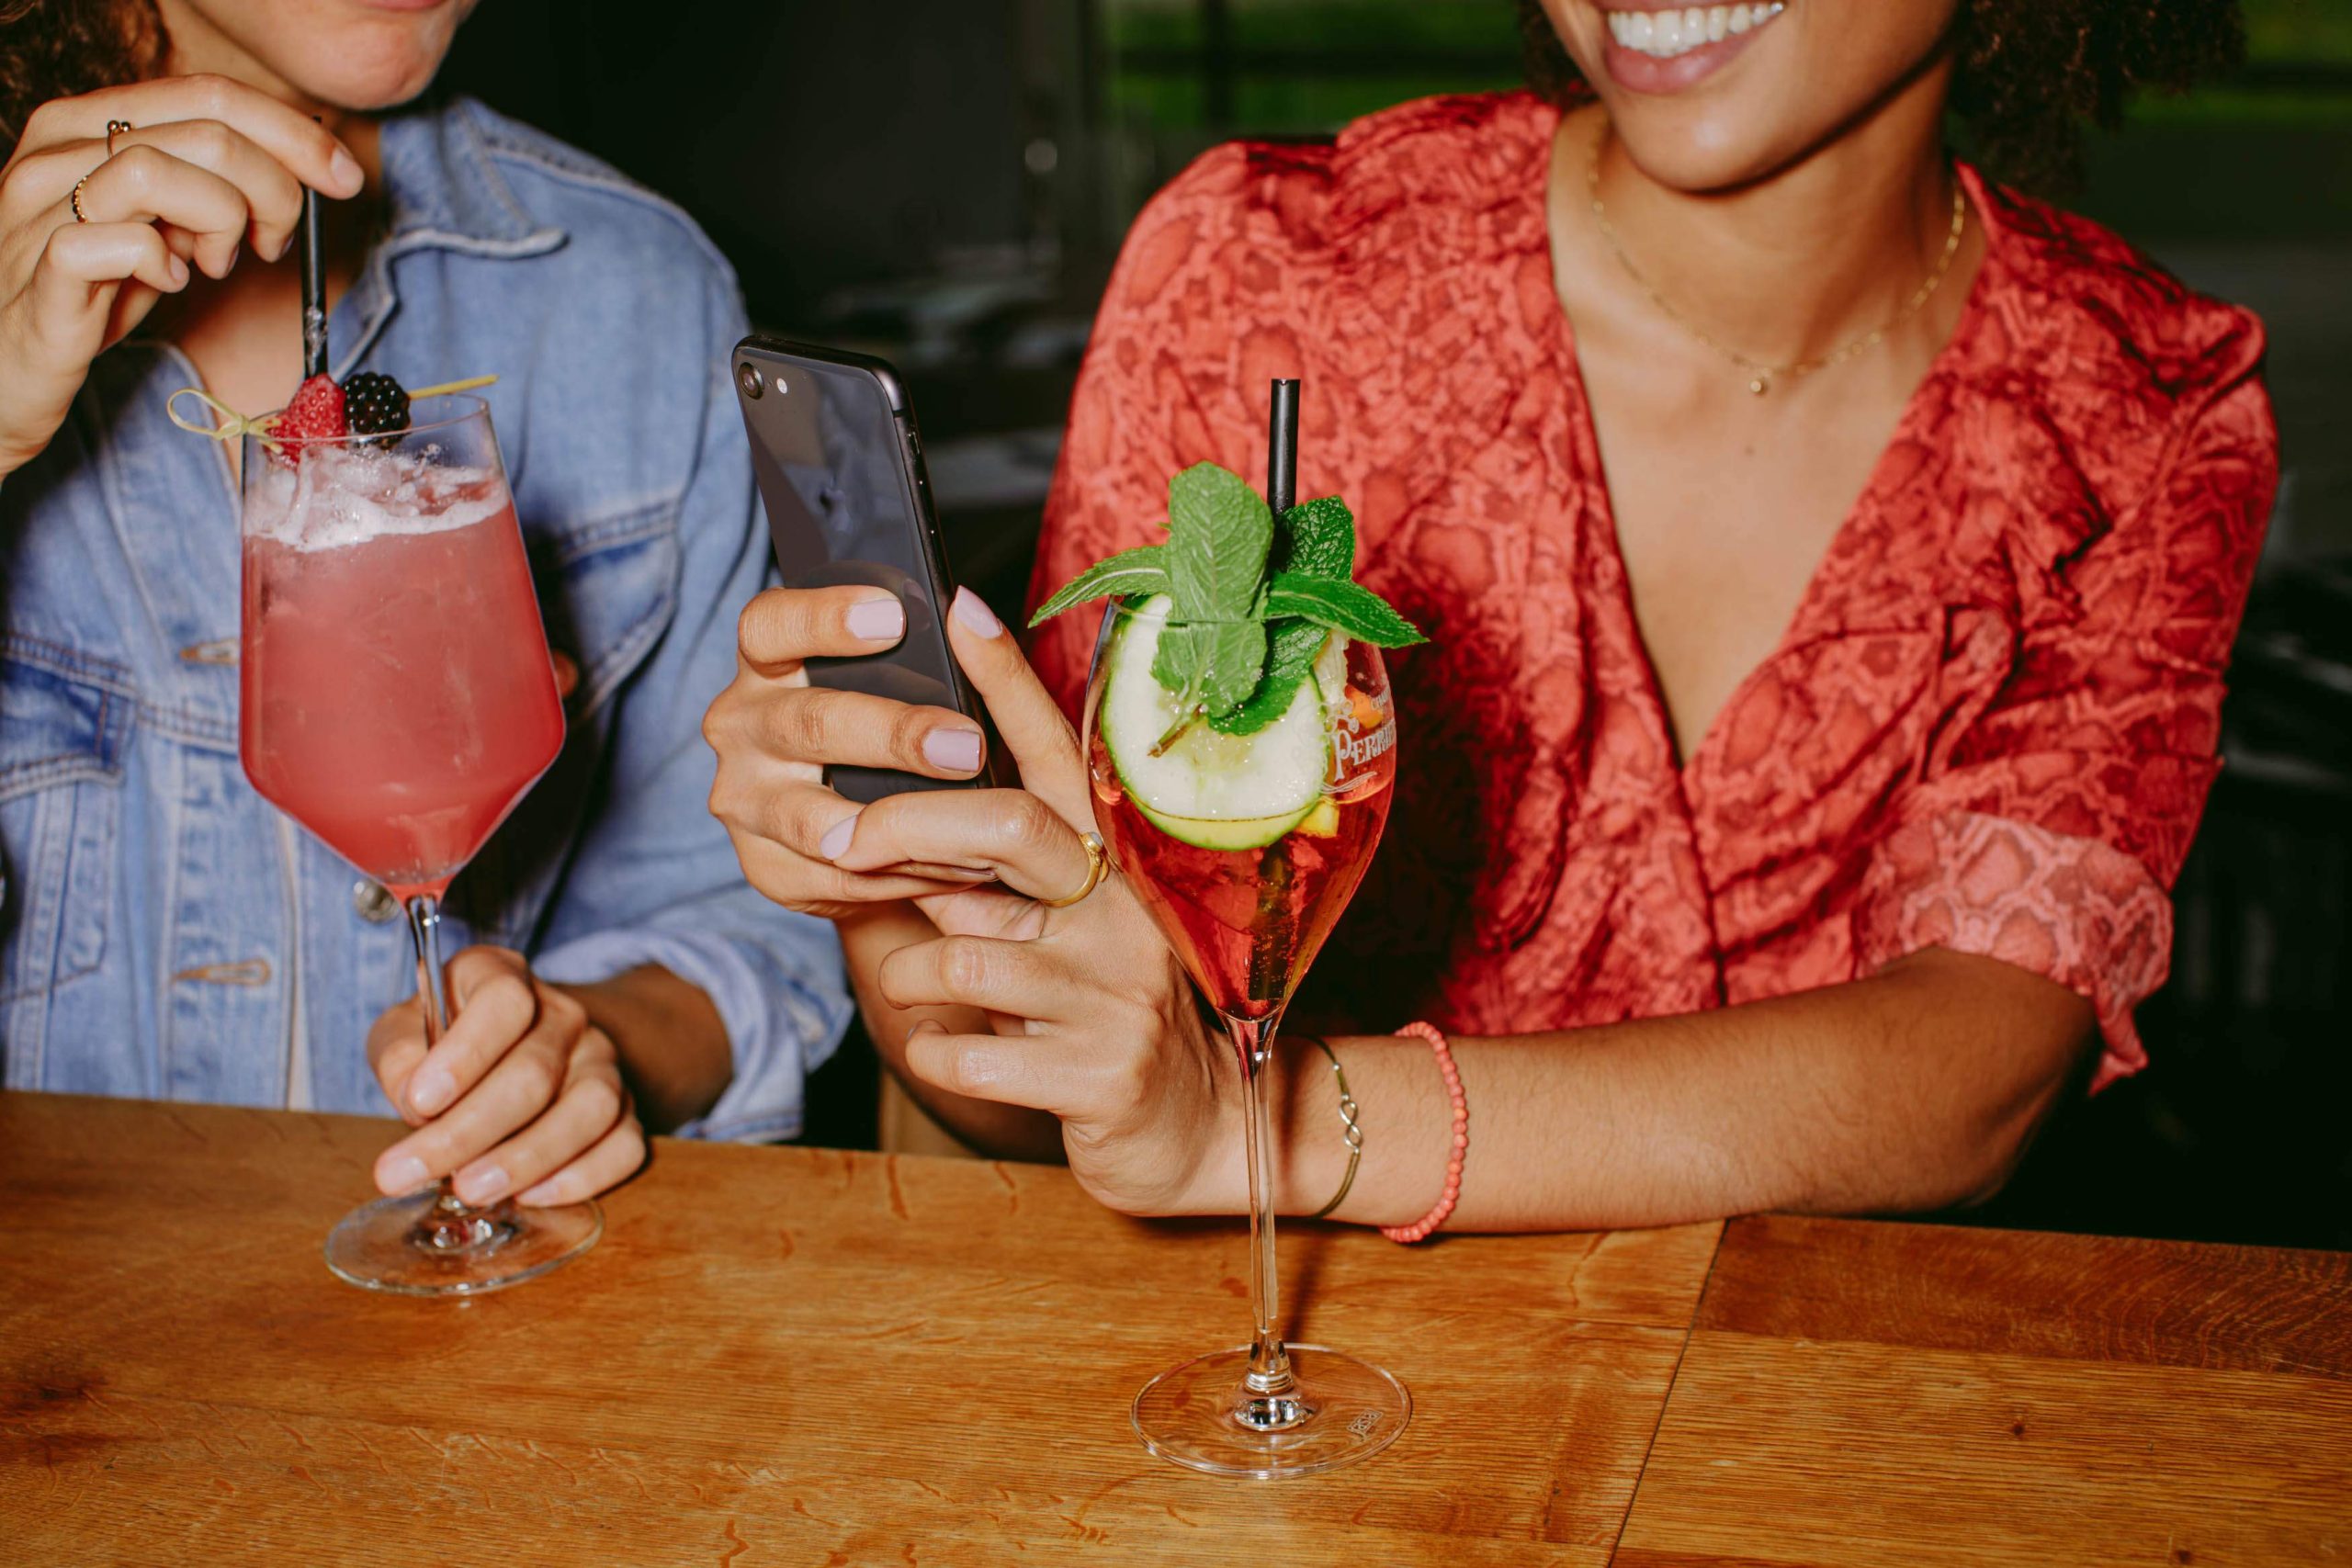 la imagen muestra a dos comensales disfrutando de una bebida Uno de los comensales está tomando una foto de sus bebidas con su teléfono celular.